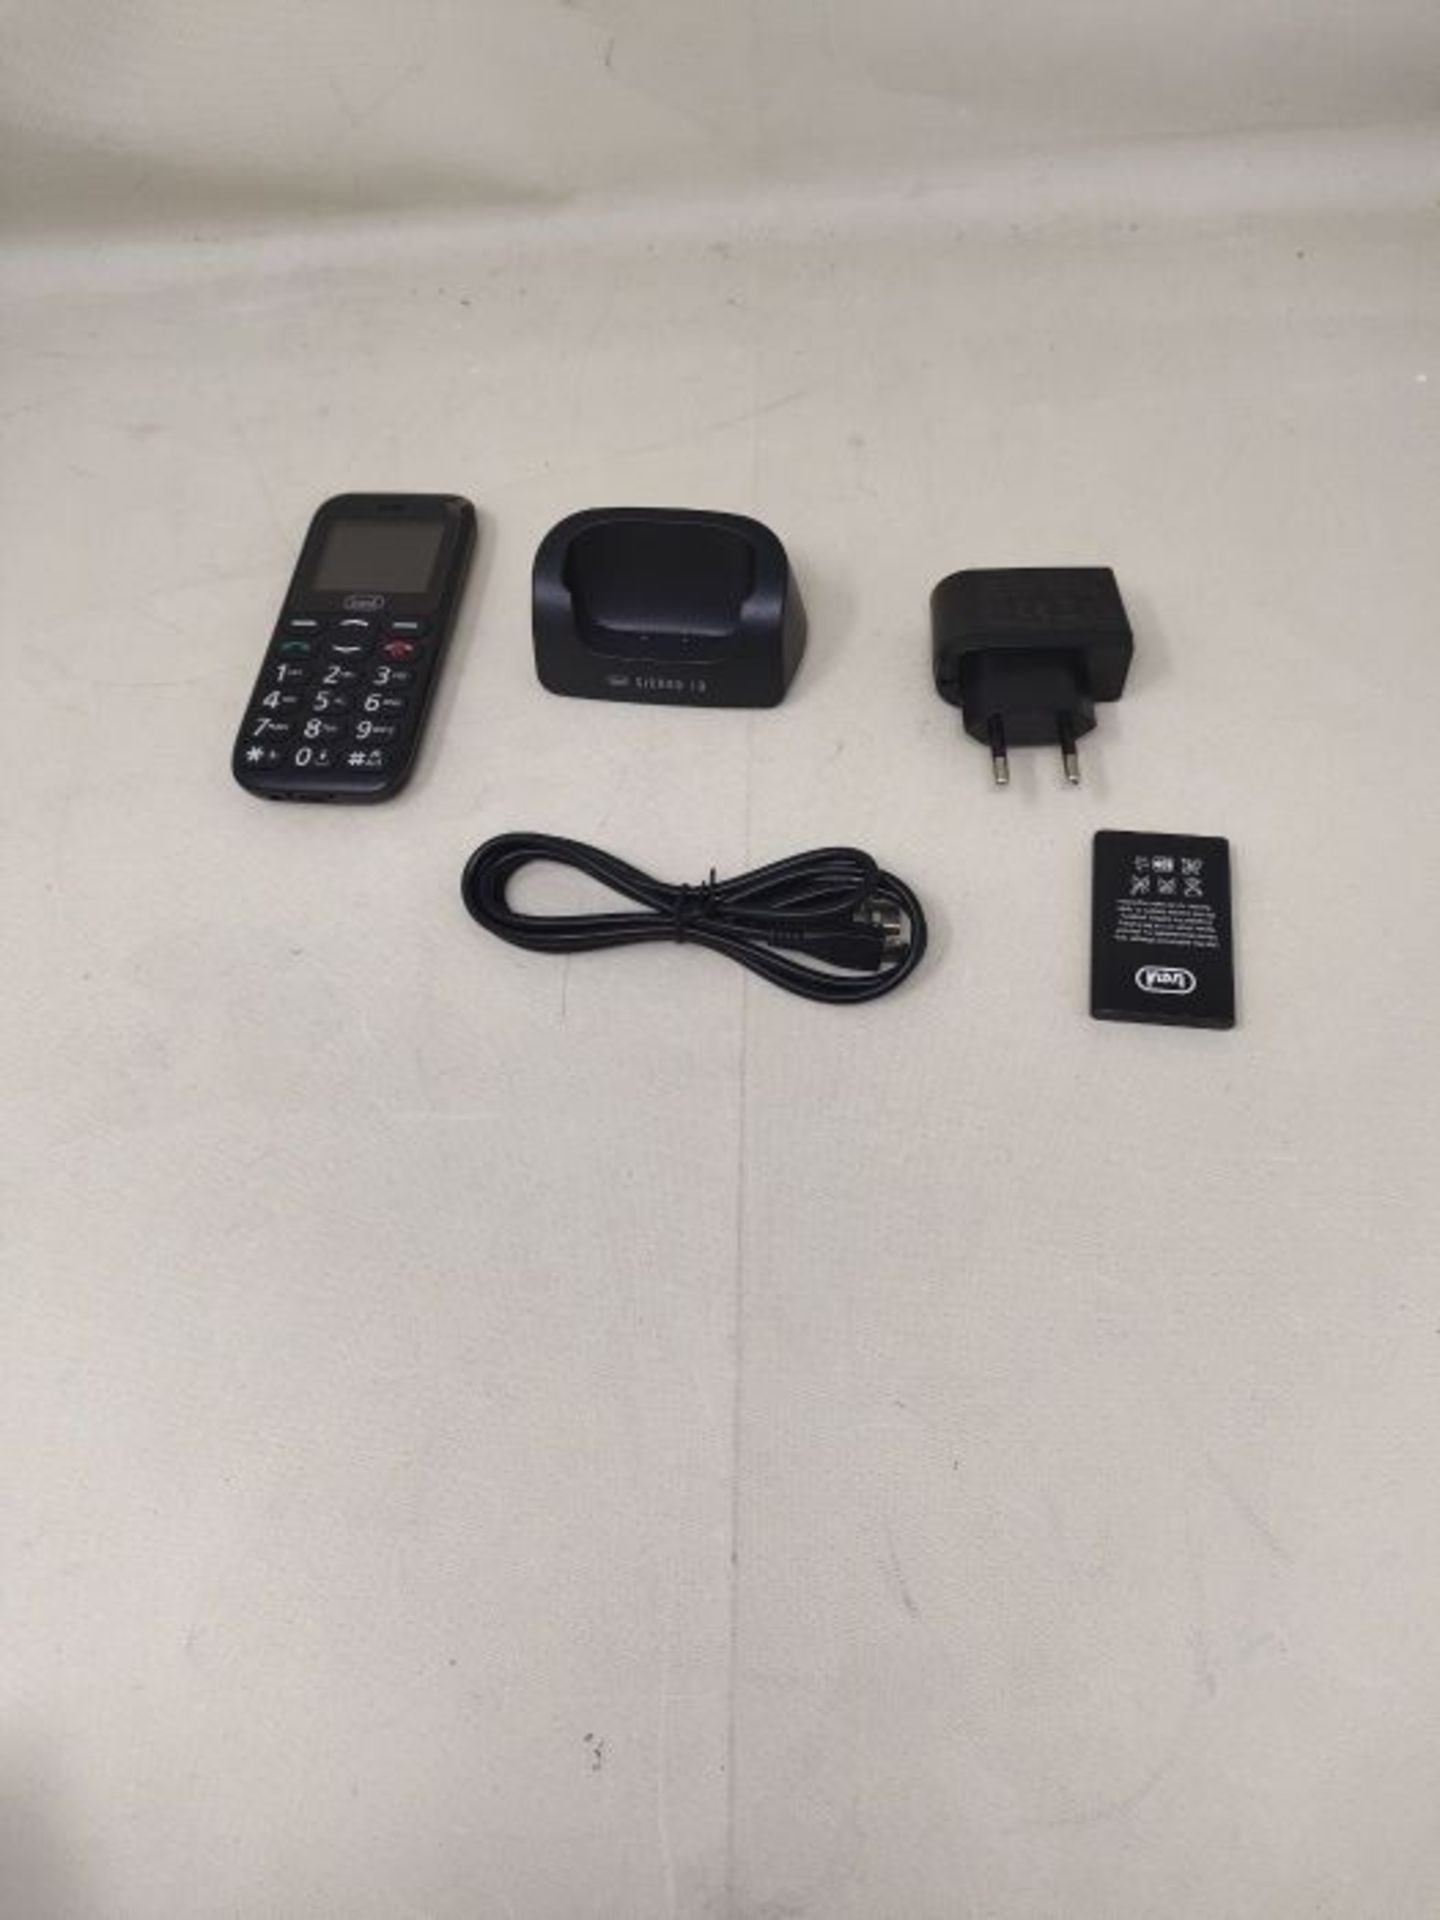 Trevi SICURO 10 Telefono Cellulare per Anziani con Tasti Grandi, Funzione SOS, Base di - Image 3 of 3